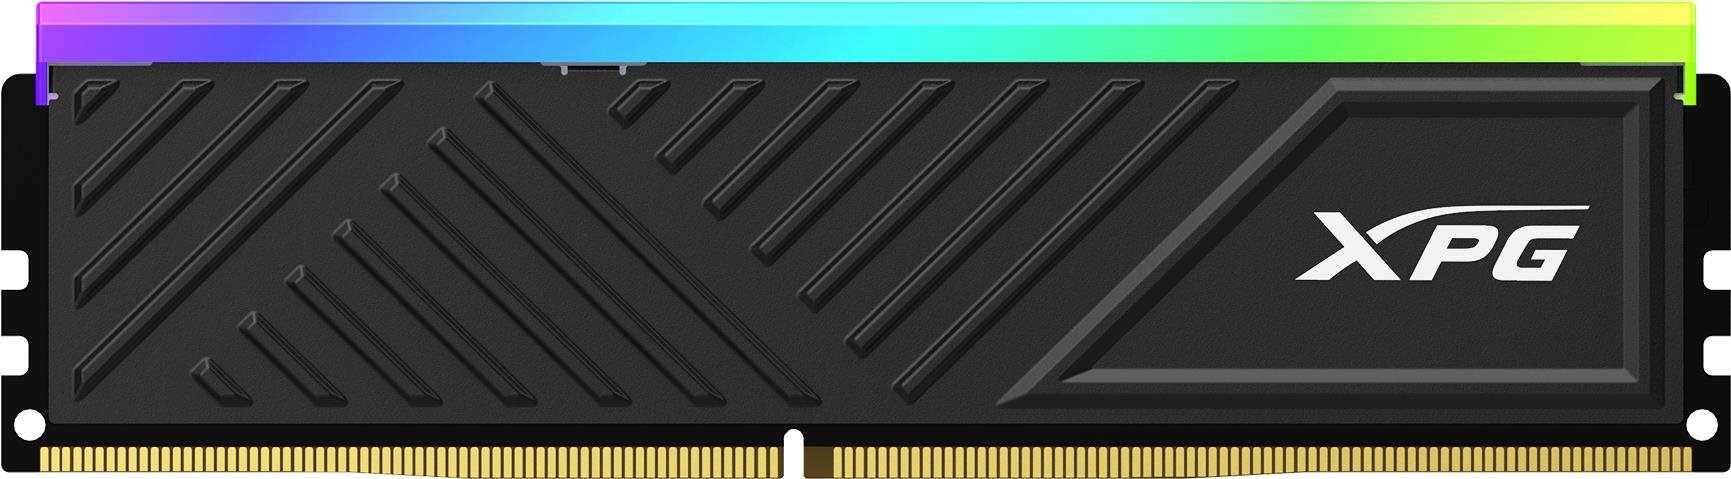 Adata XPG D35/ DDR4/ 16GB/ 3200MHz/ CL16/ 2x8GB/ RGB/ Black 